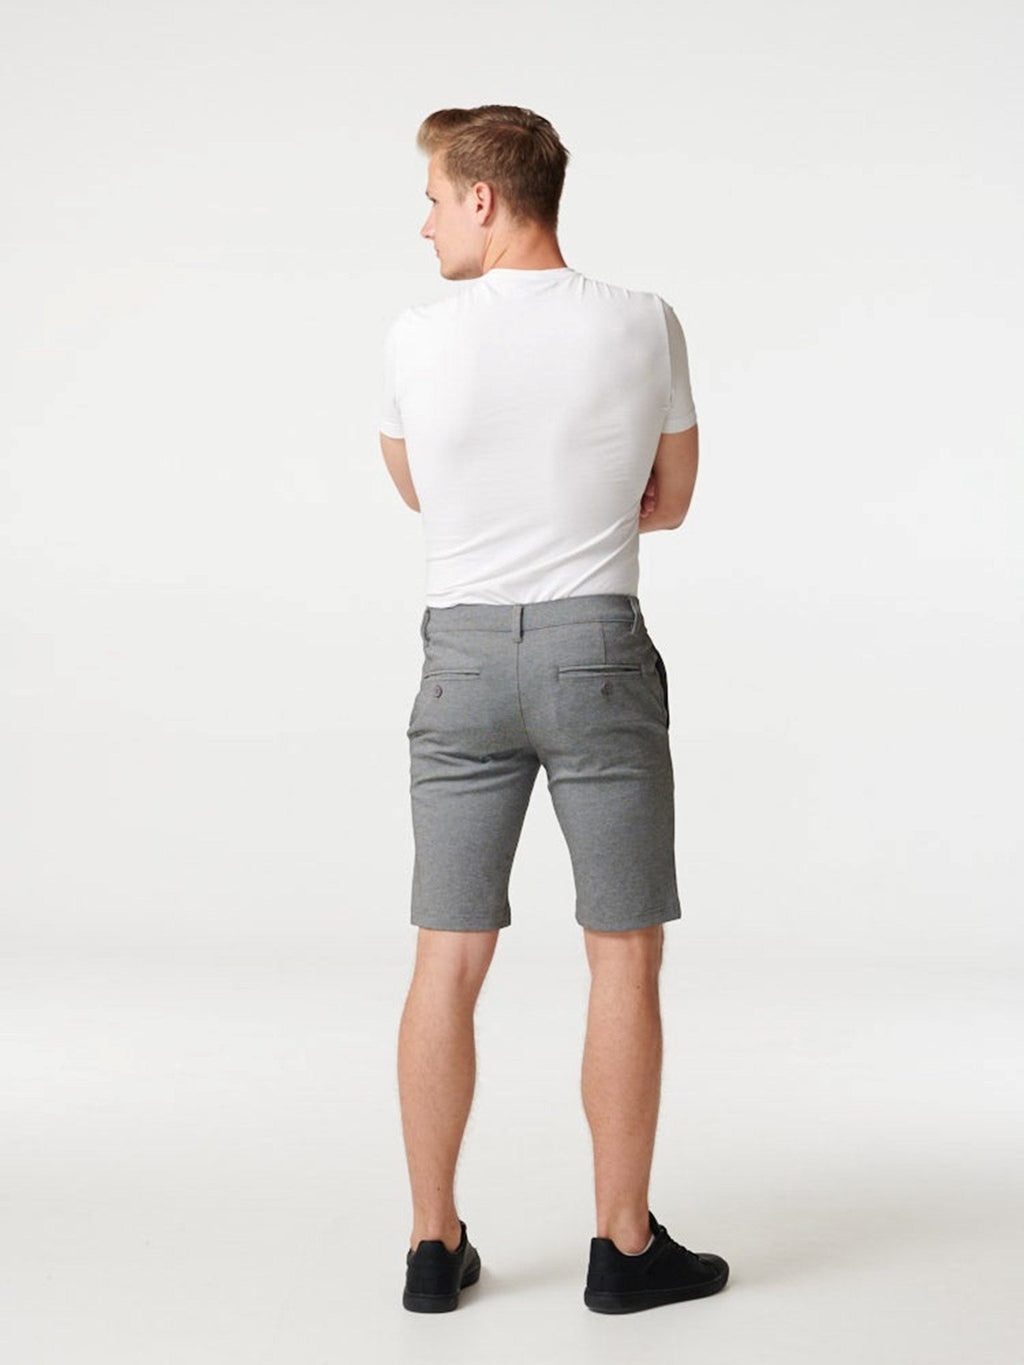 奇诺短裤 - 斑驳的灰色